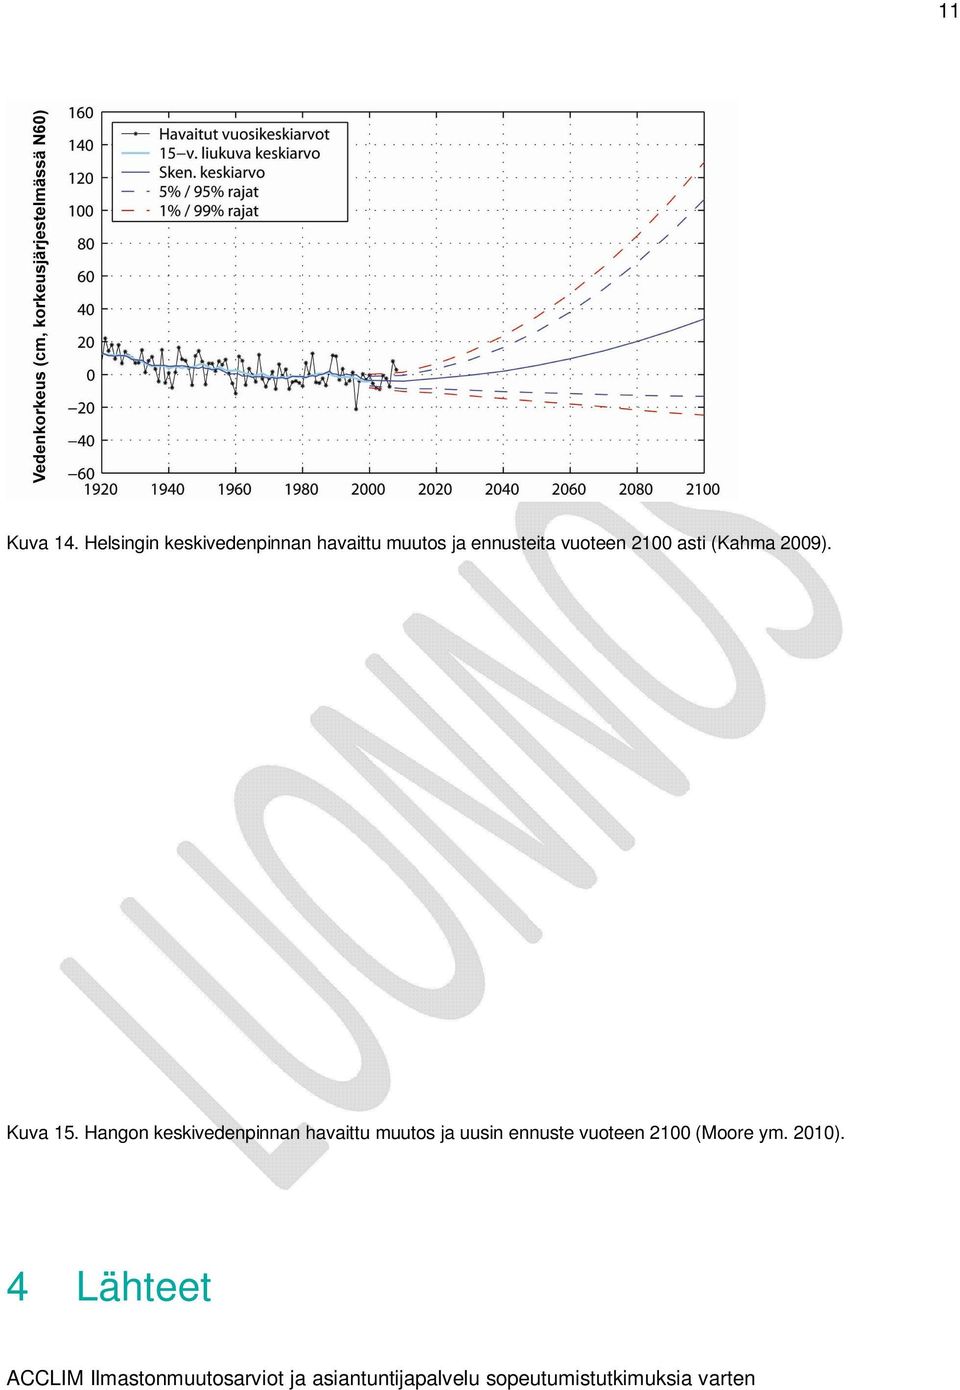 Kuva 15. Hangon keskivedenpinnan havaittu muutos ja uusin ennuste vuoteen 2100 (Moore ym. 2010).